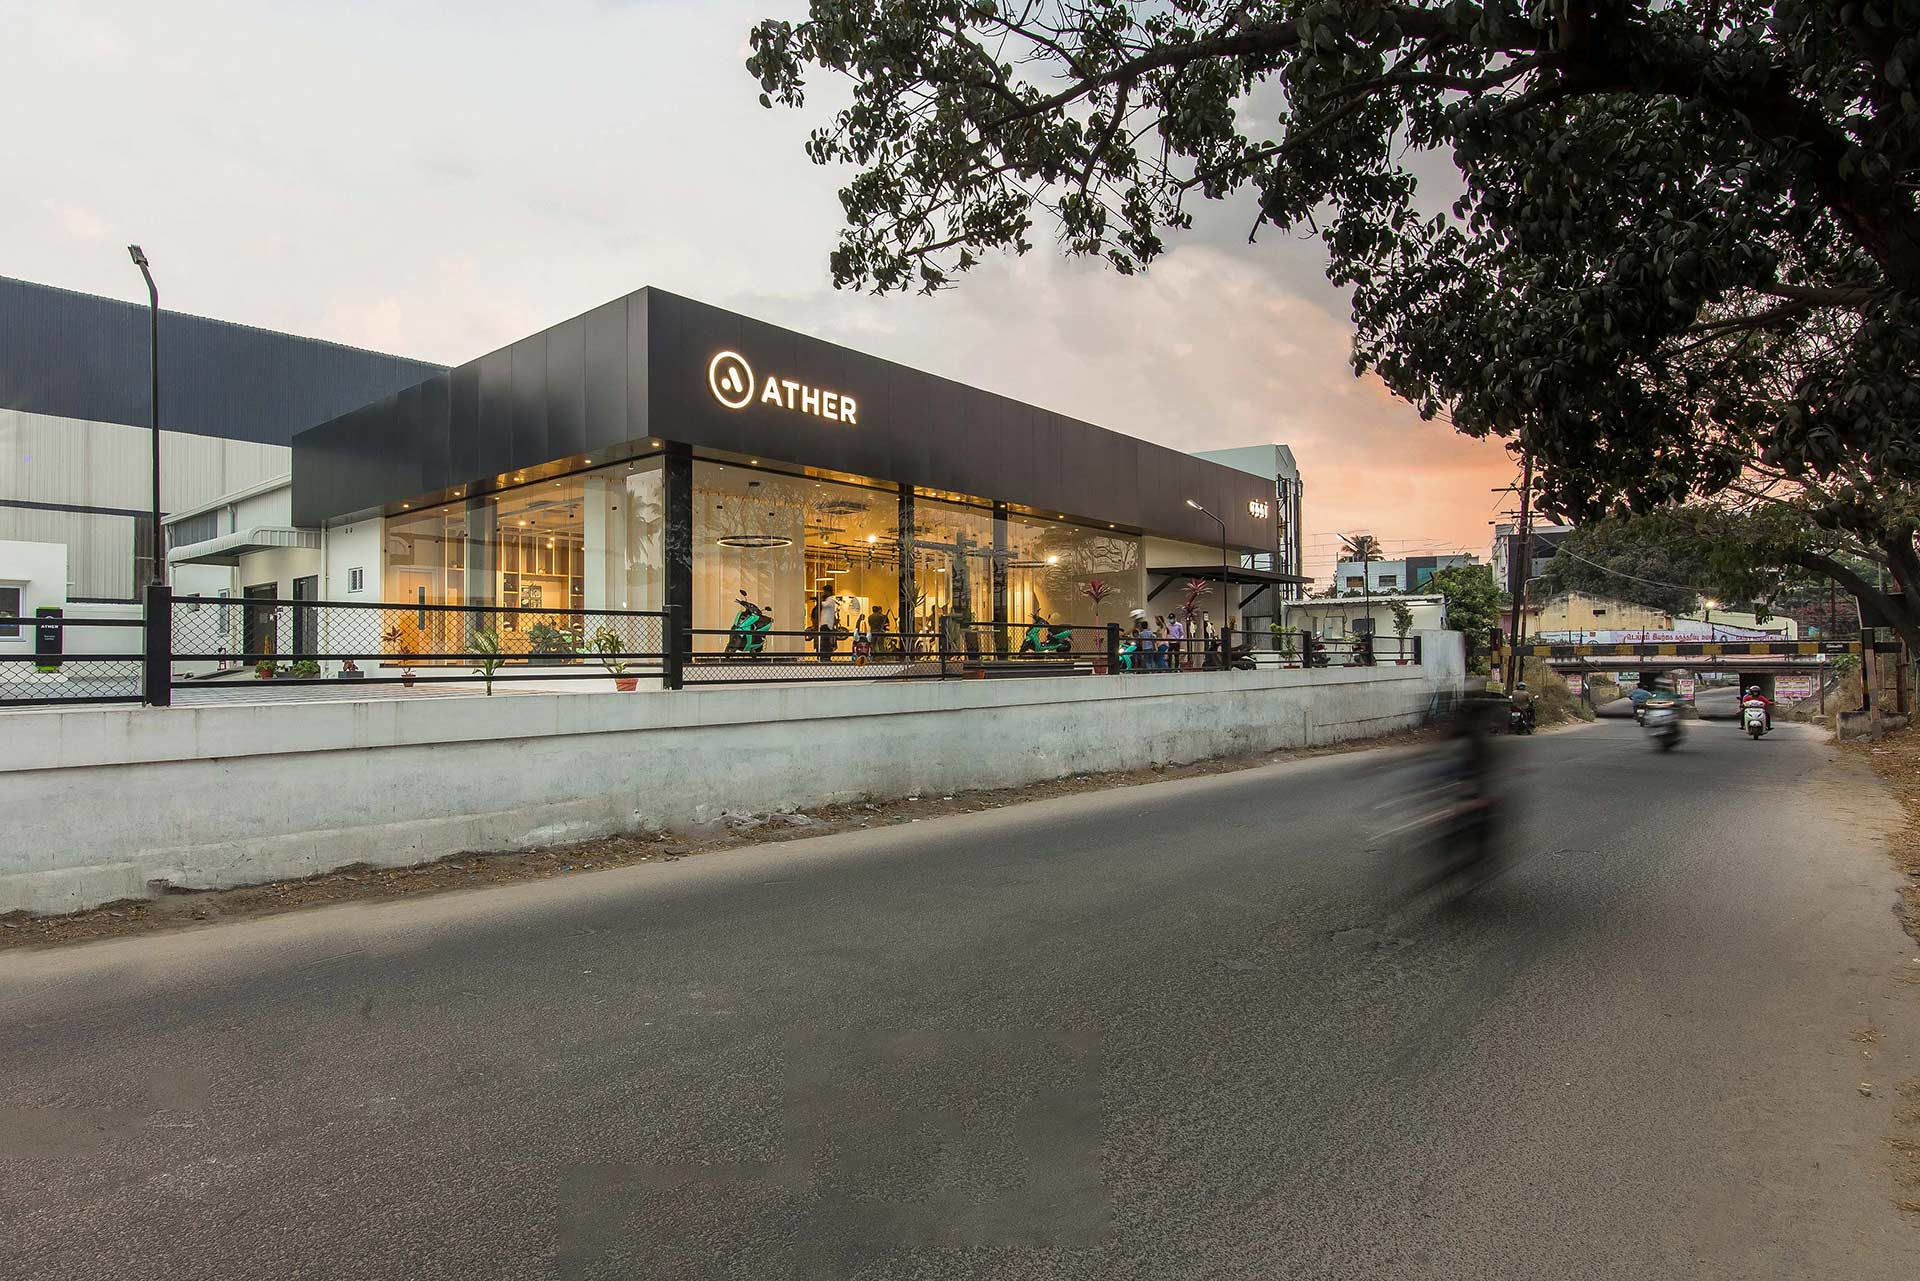 Retail Interior Designers in Coimbatore